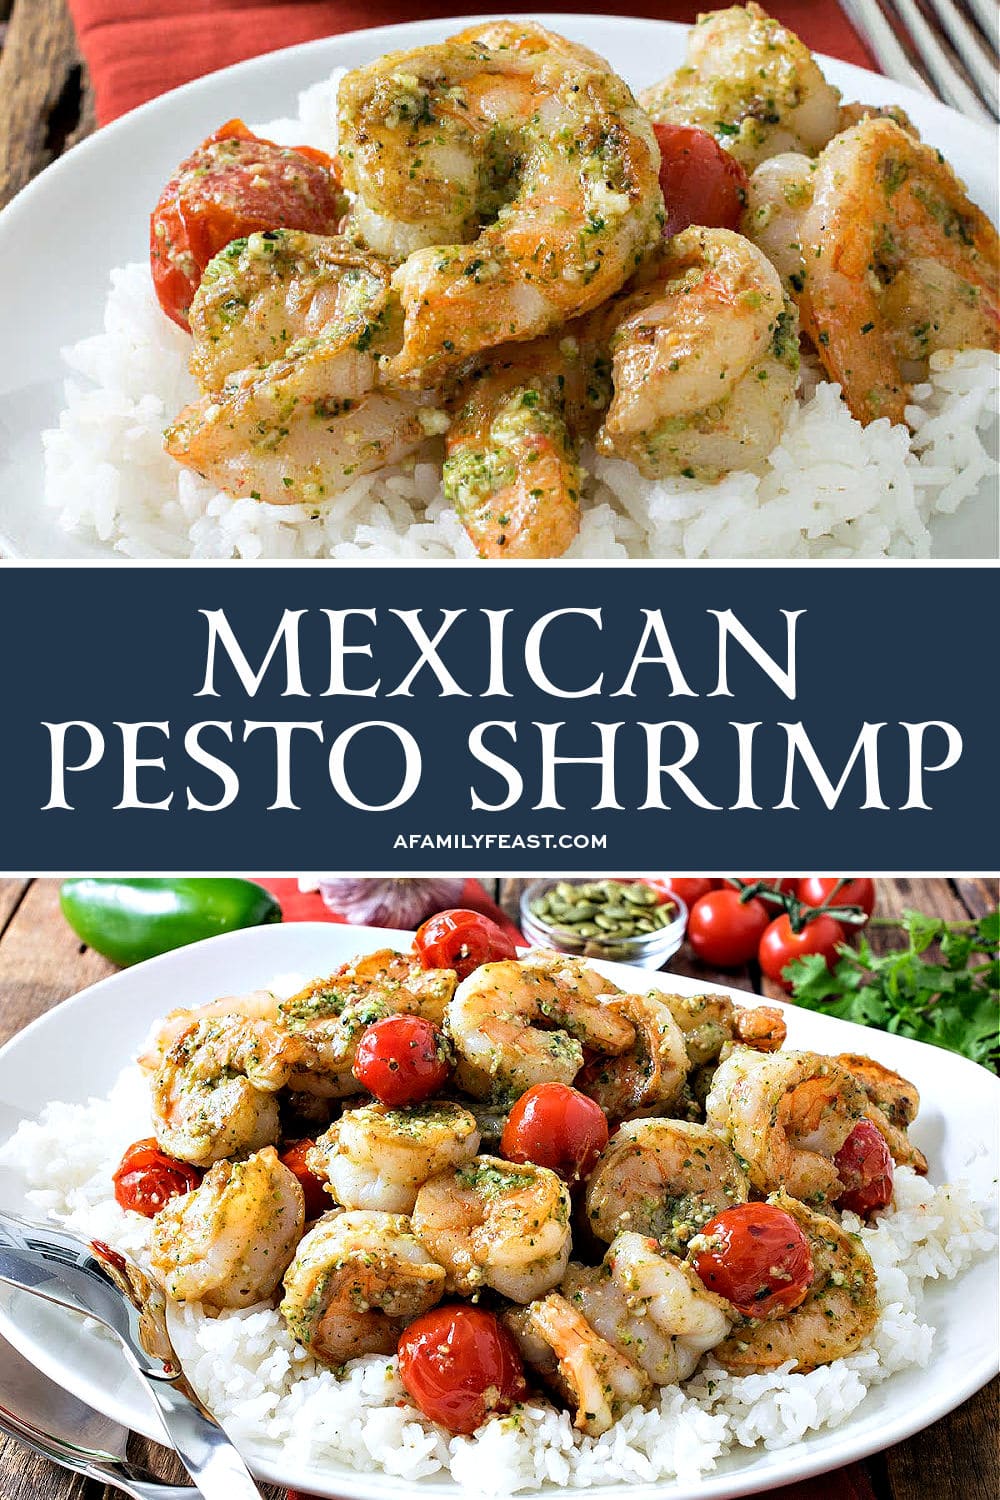 Mexican Pesto Shrimp